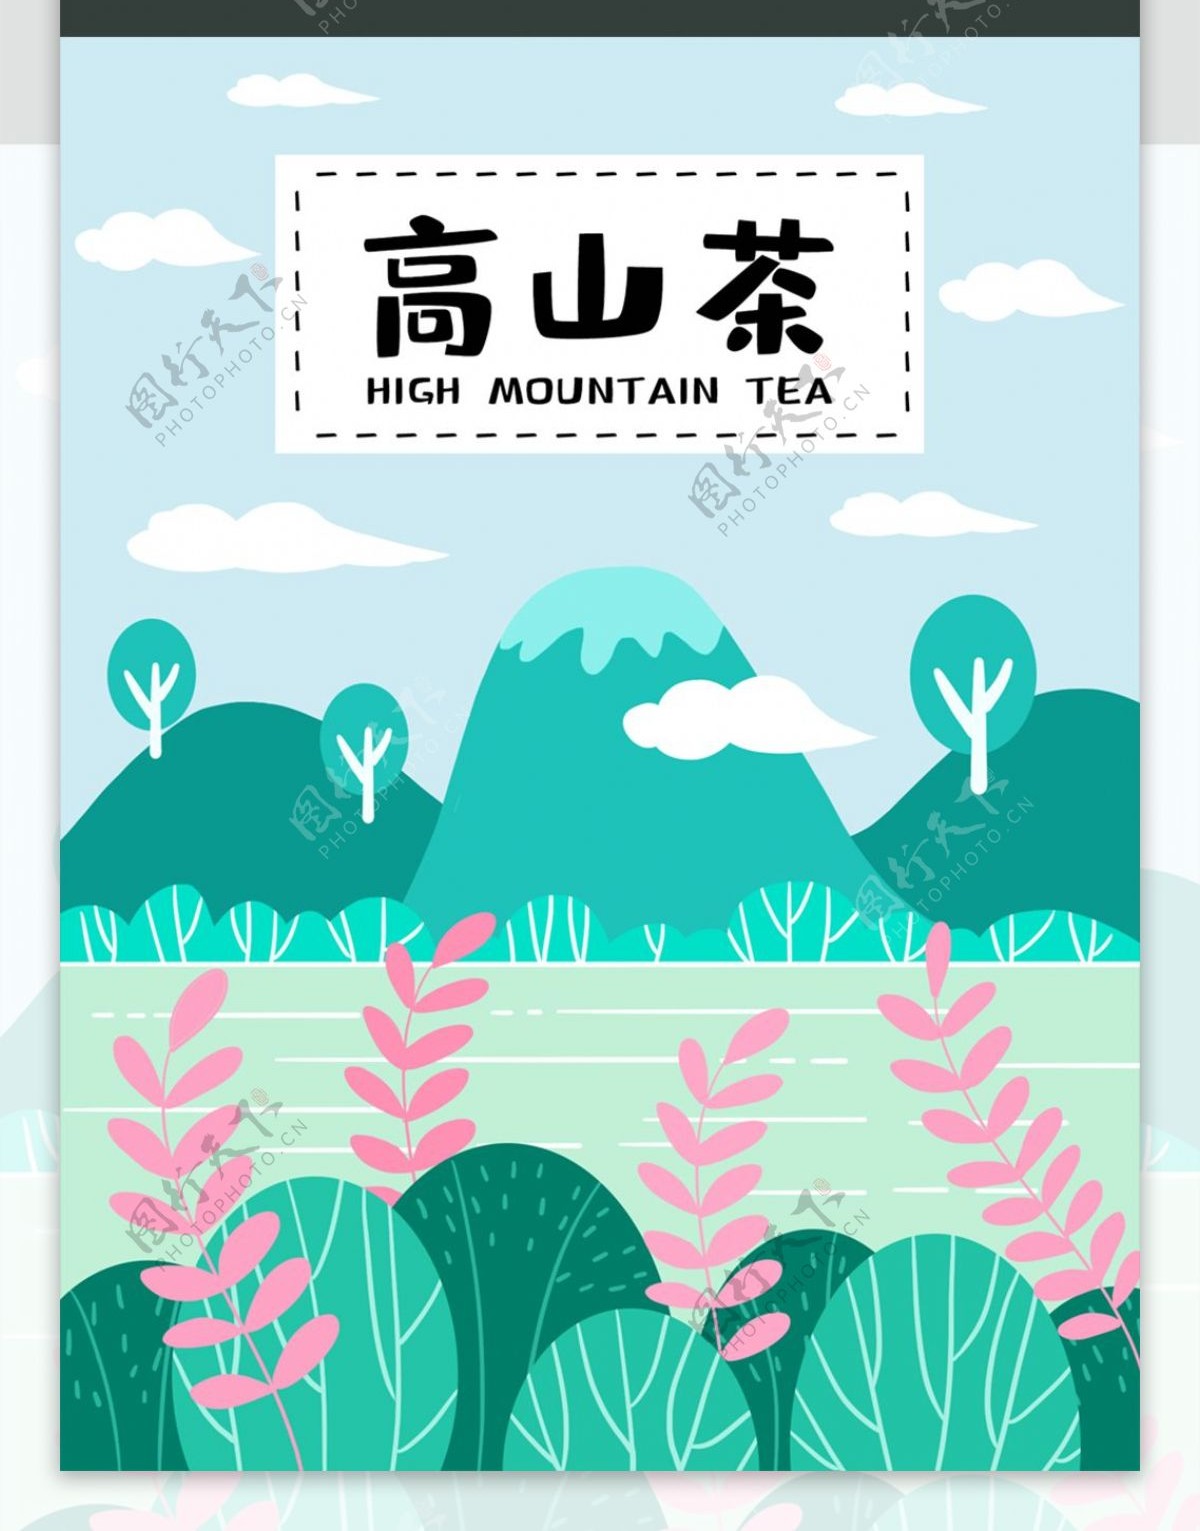 手绘小清新风景高山茶茶叶包装